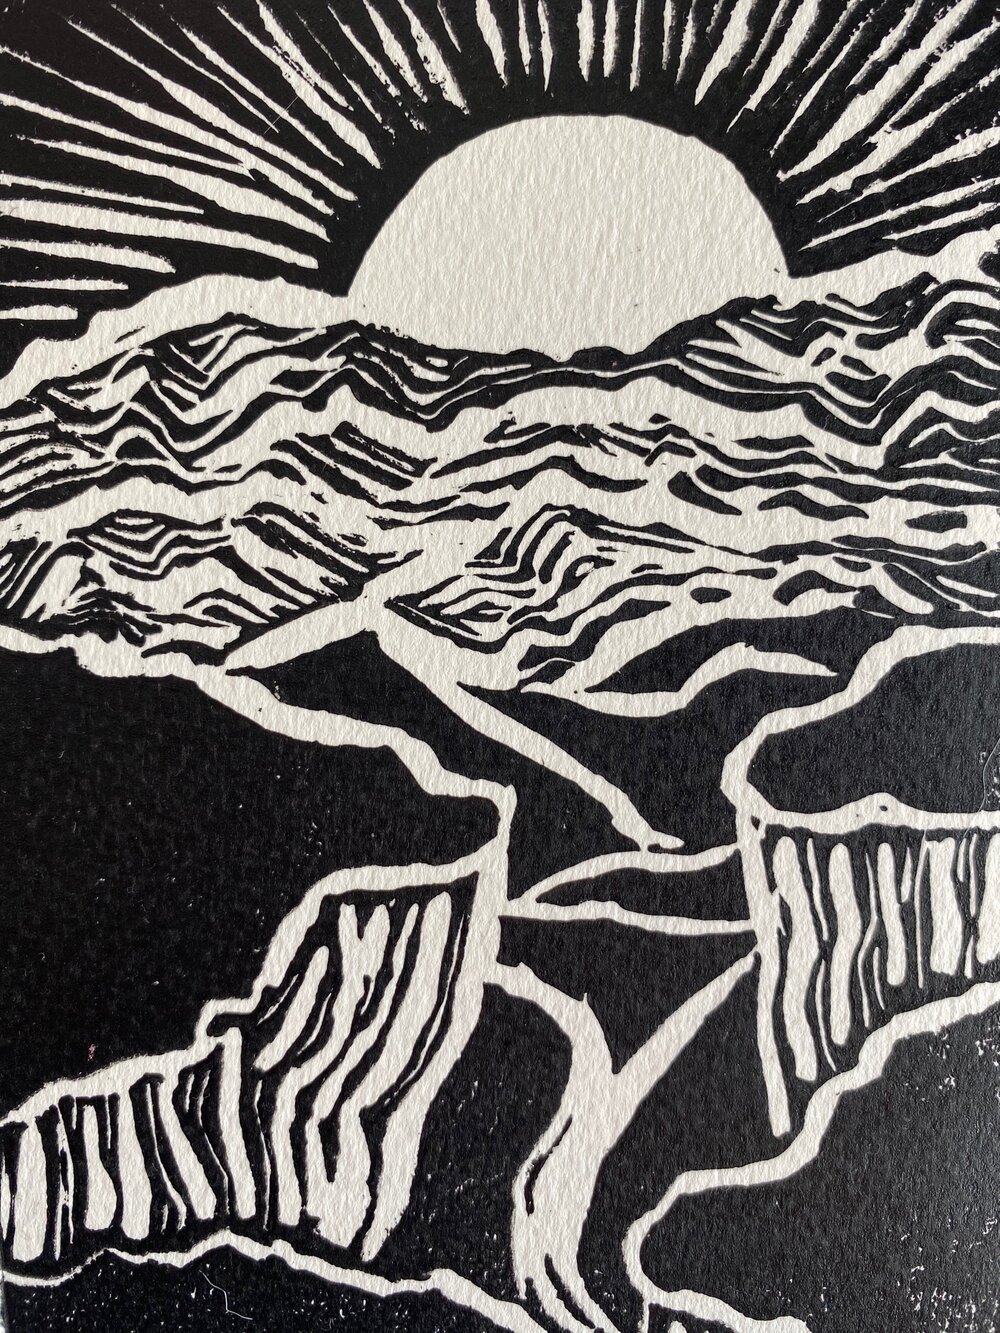 Mountains - Linocut Block Print - Printmaking - Art Print